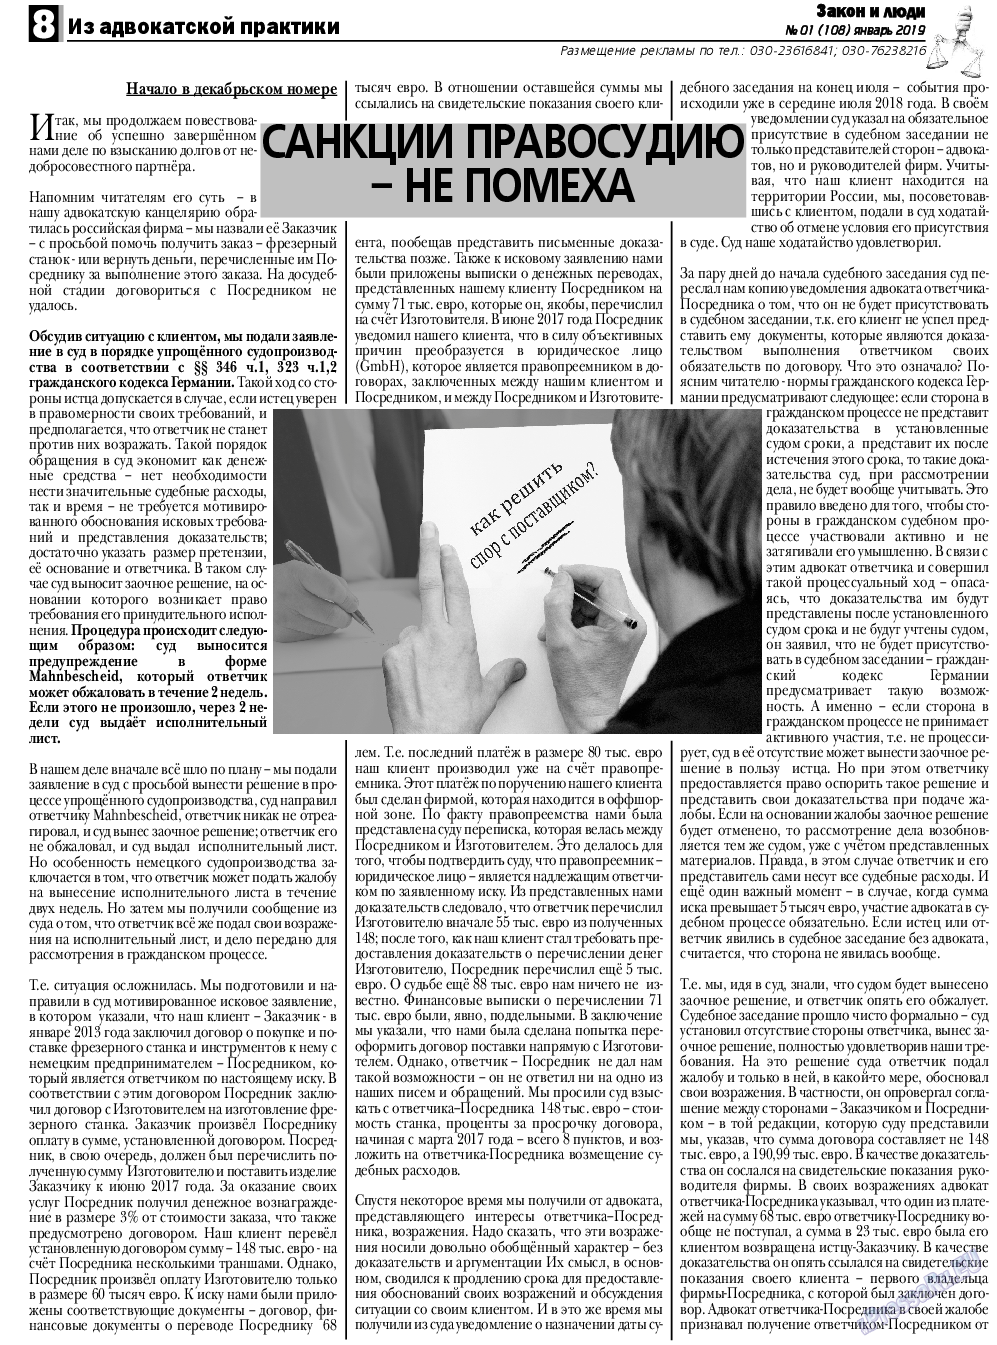 Закон и люди, газета. 2019 №1 стр.8